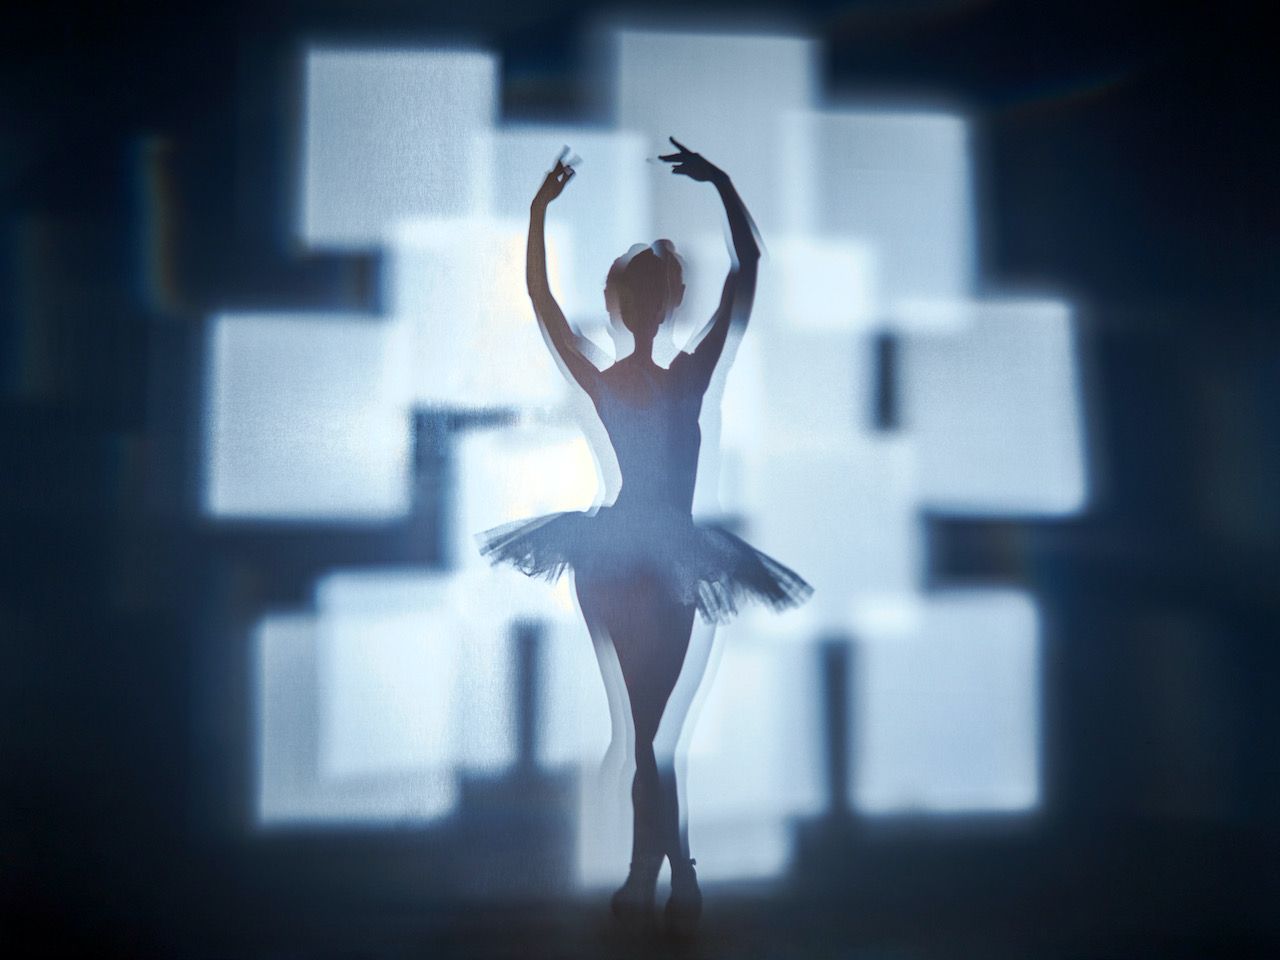 Michael Haegele abstrakte Fotografie Silhouette Ballerina mit leuchtenden überlappenden Quadraten im Hintergrund 